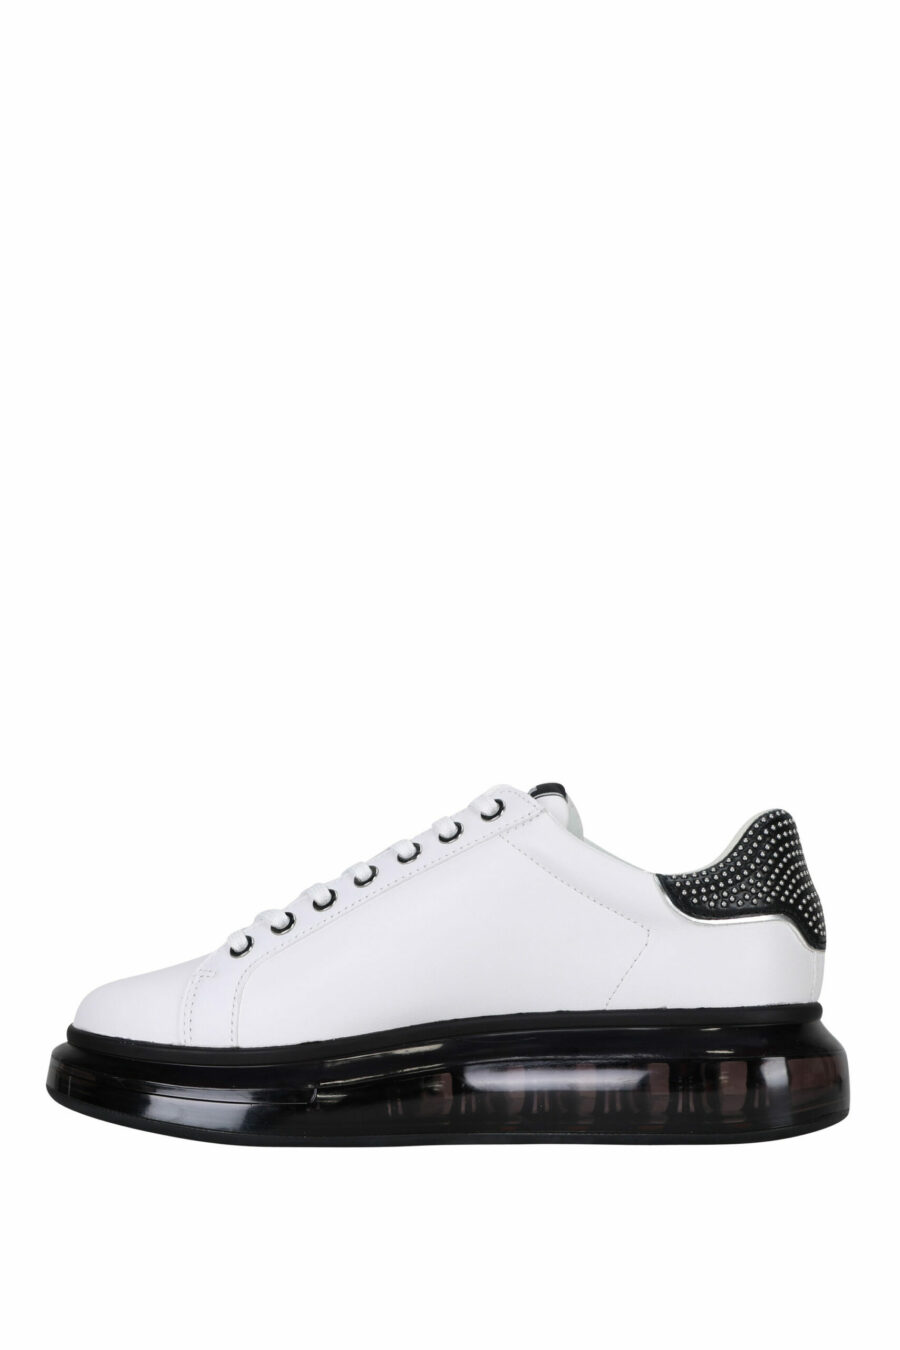 Zapatillas blancas "kapri fushion" con suela negra y logo en contorno - 5059529363467 2 scaled